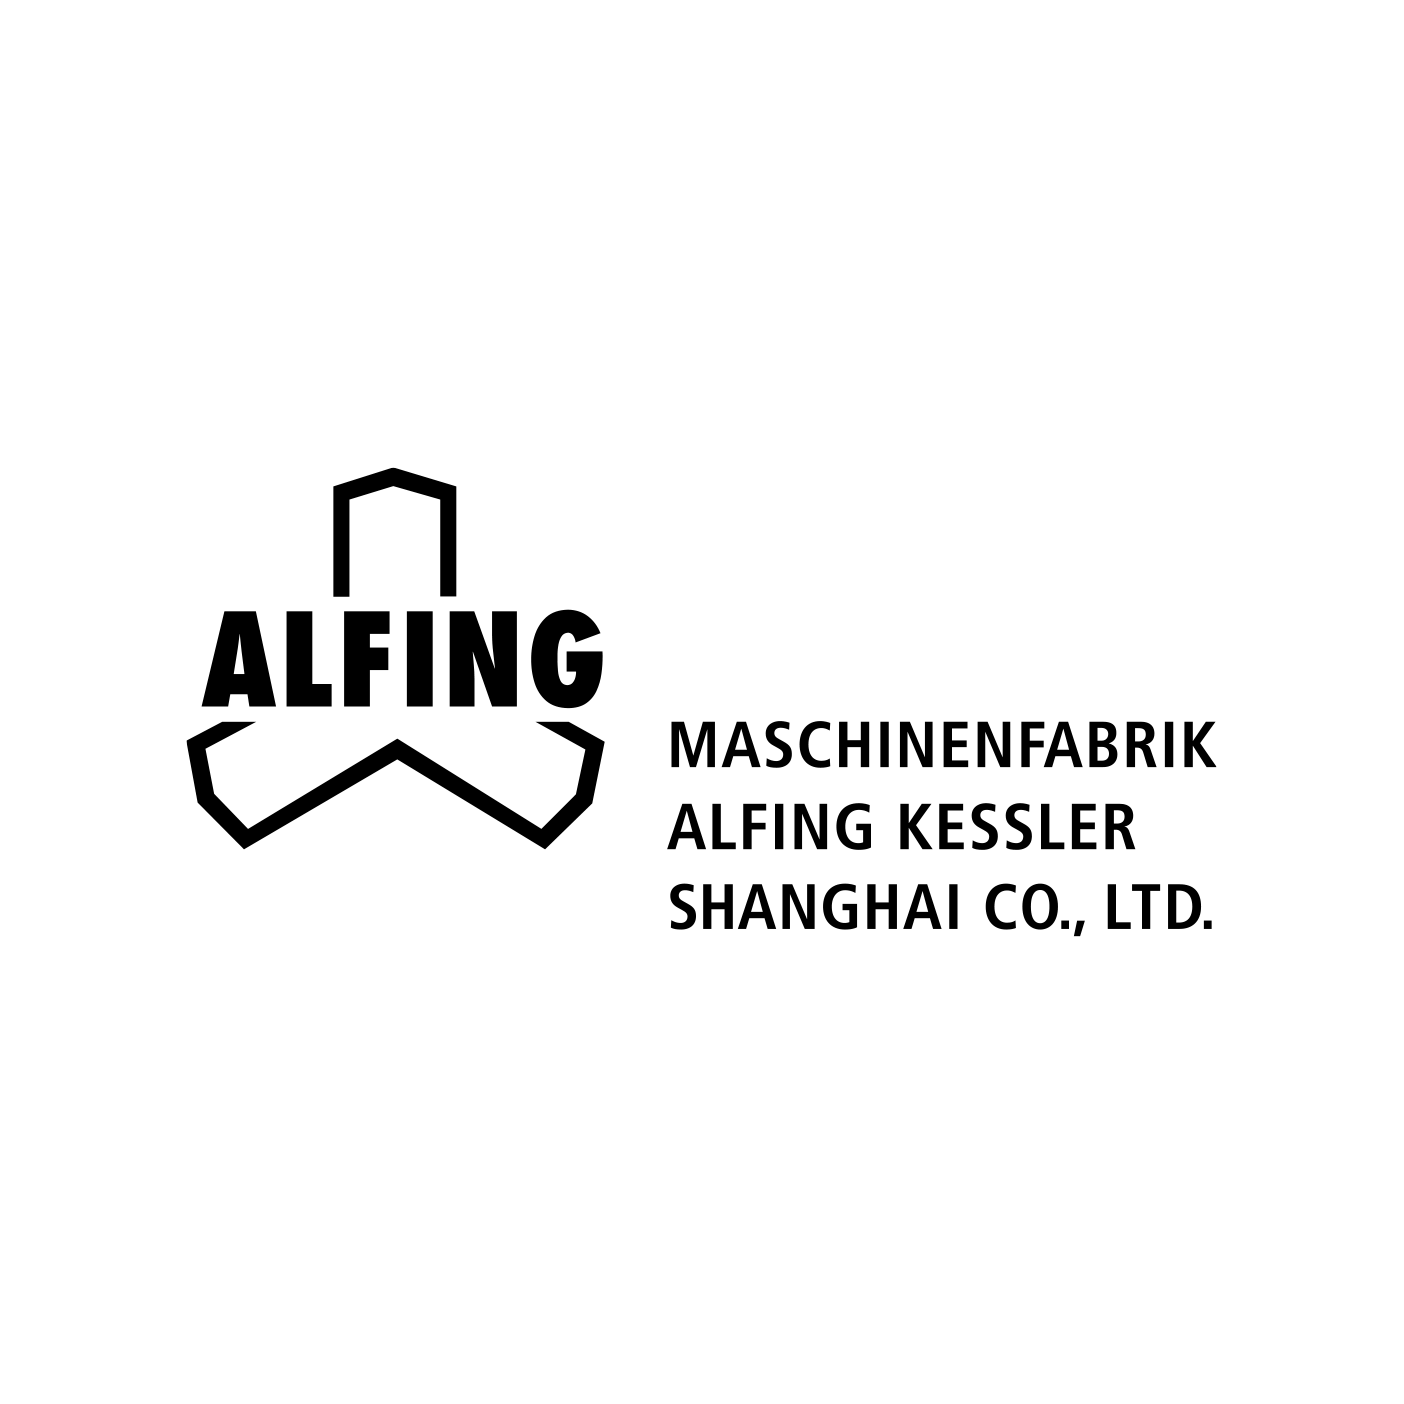 2013 Establishment of Maschinenfabrik ALFING Kessler Shanghai Co. Ltd.